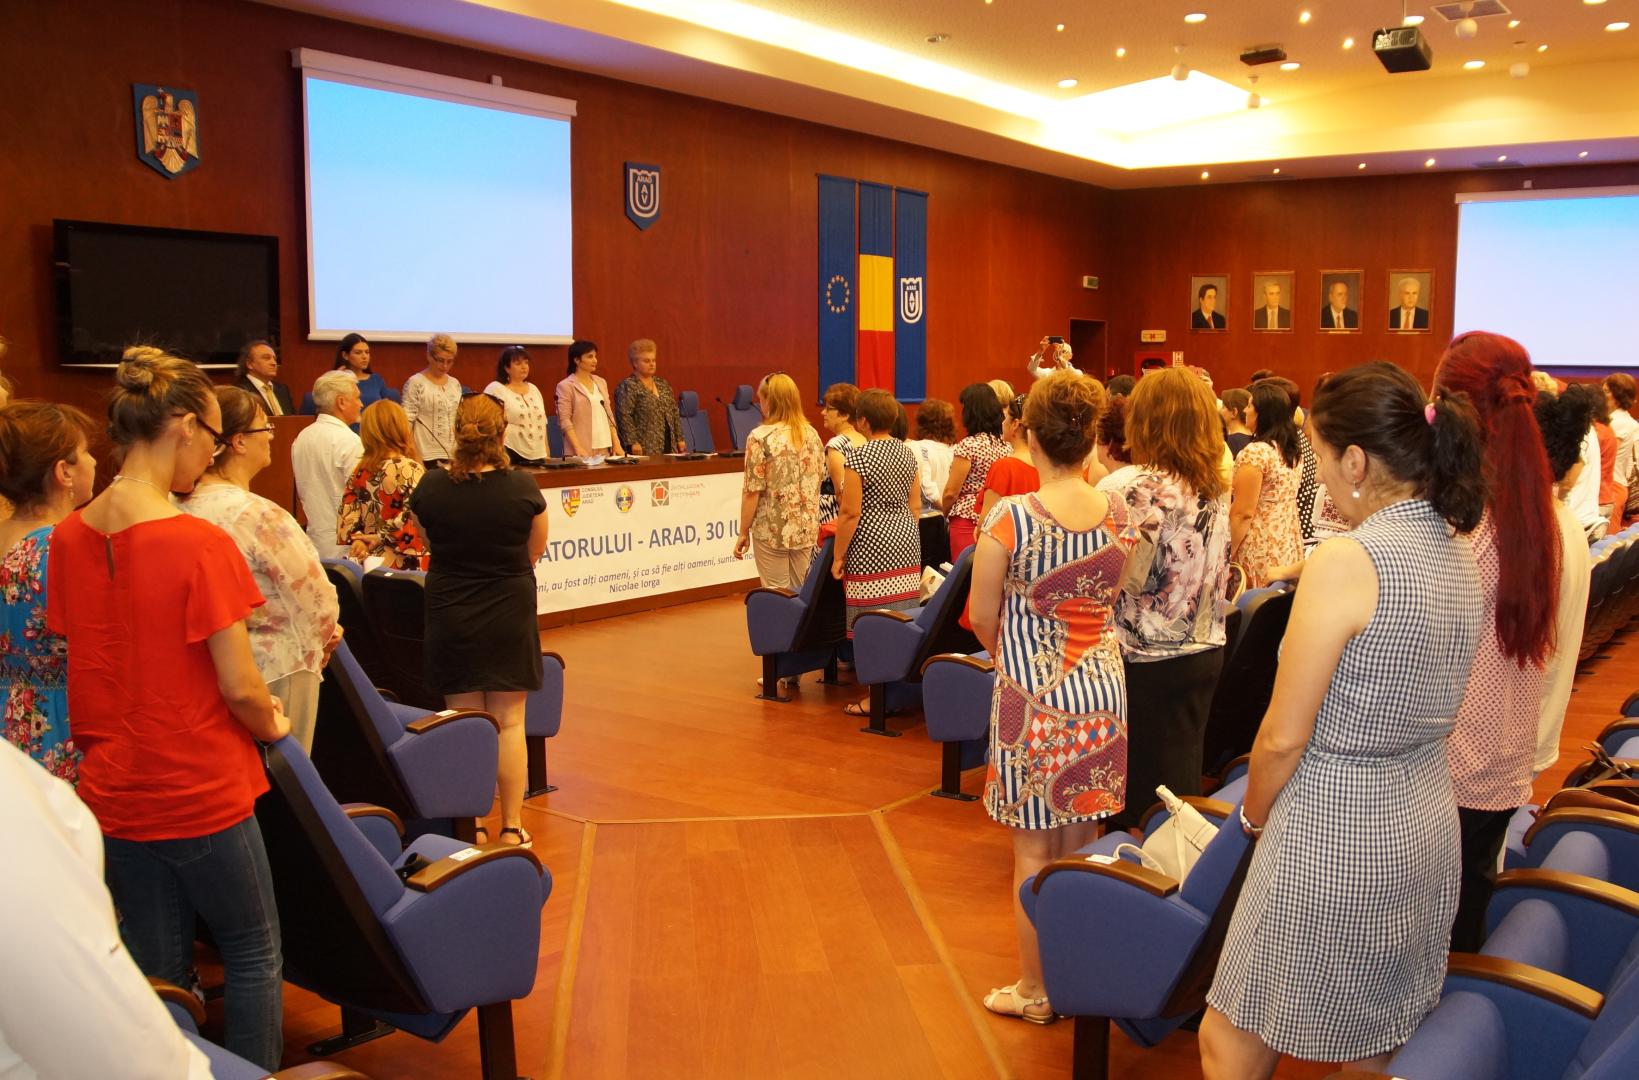 Alba Iulia, capitala învățământului românesc în perioada 6-9 august